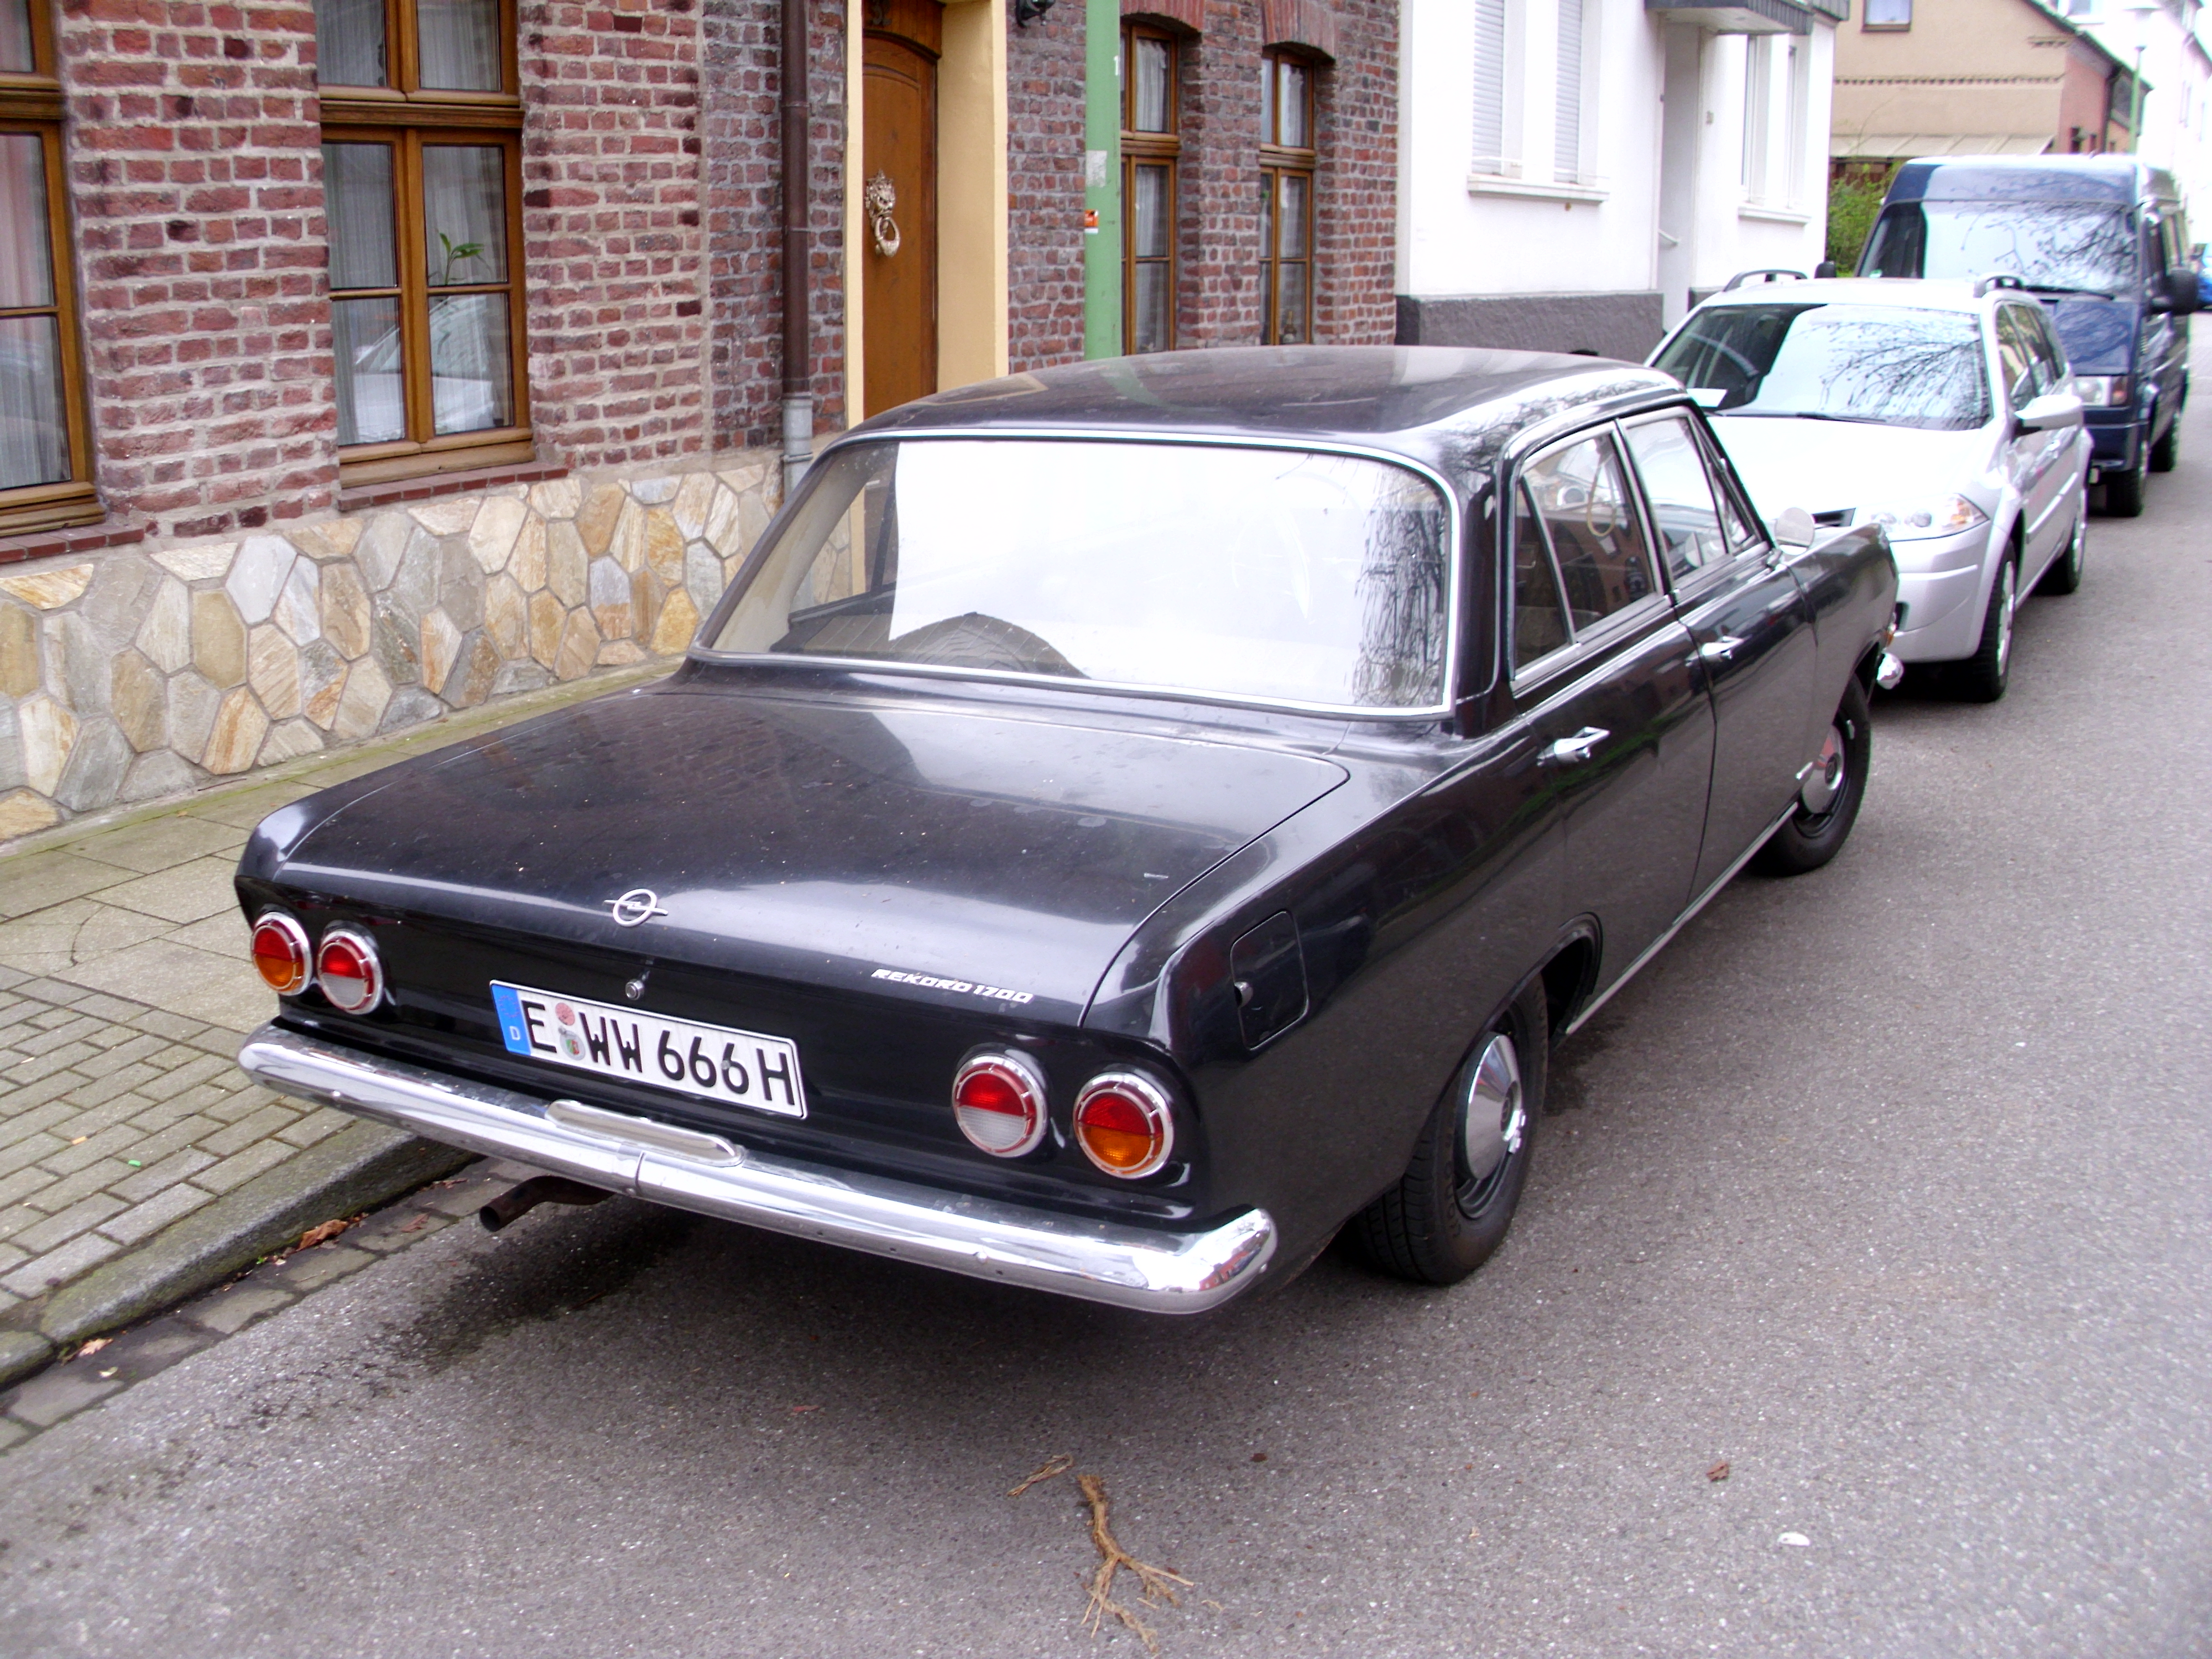 Opel Rekord B 1700 1965-66 -2- | Flickr - Photo Sharing!